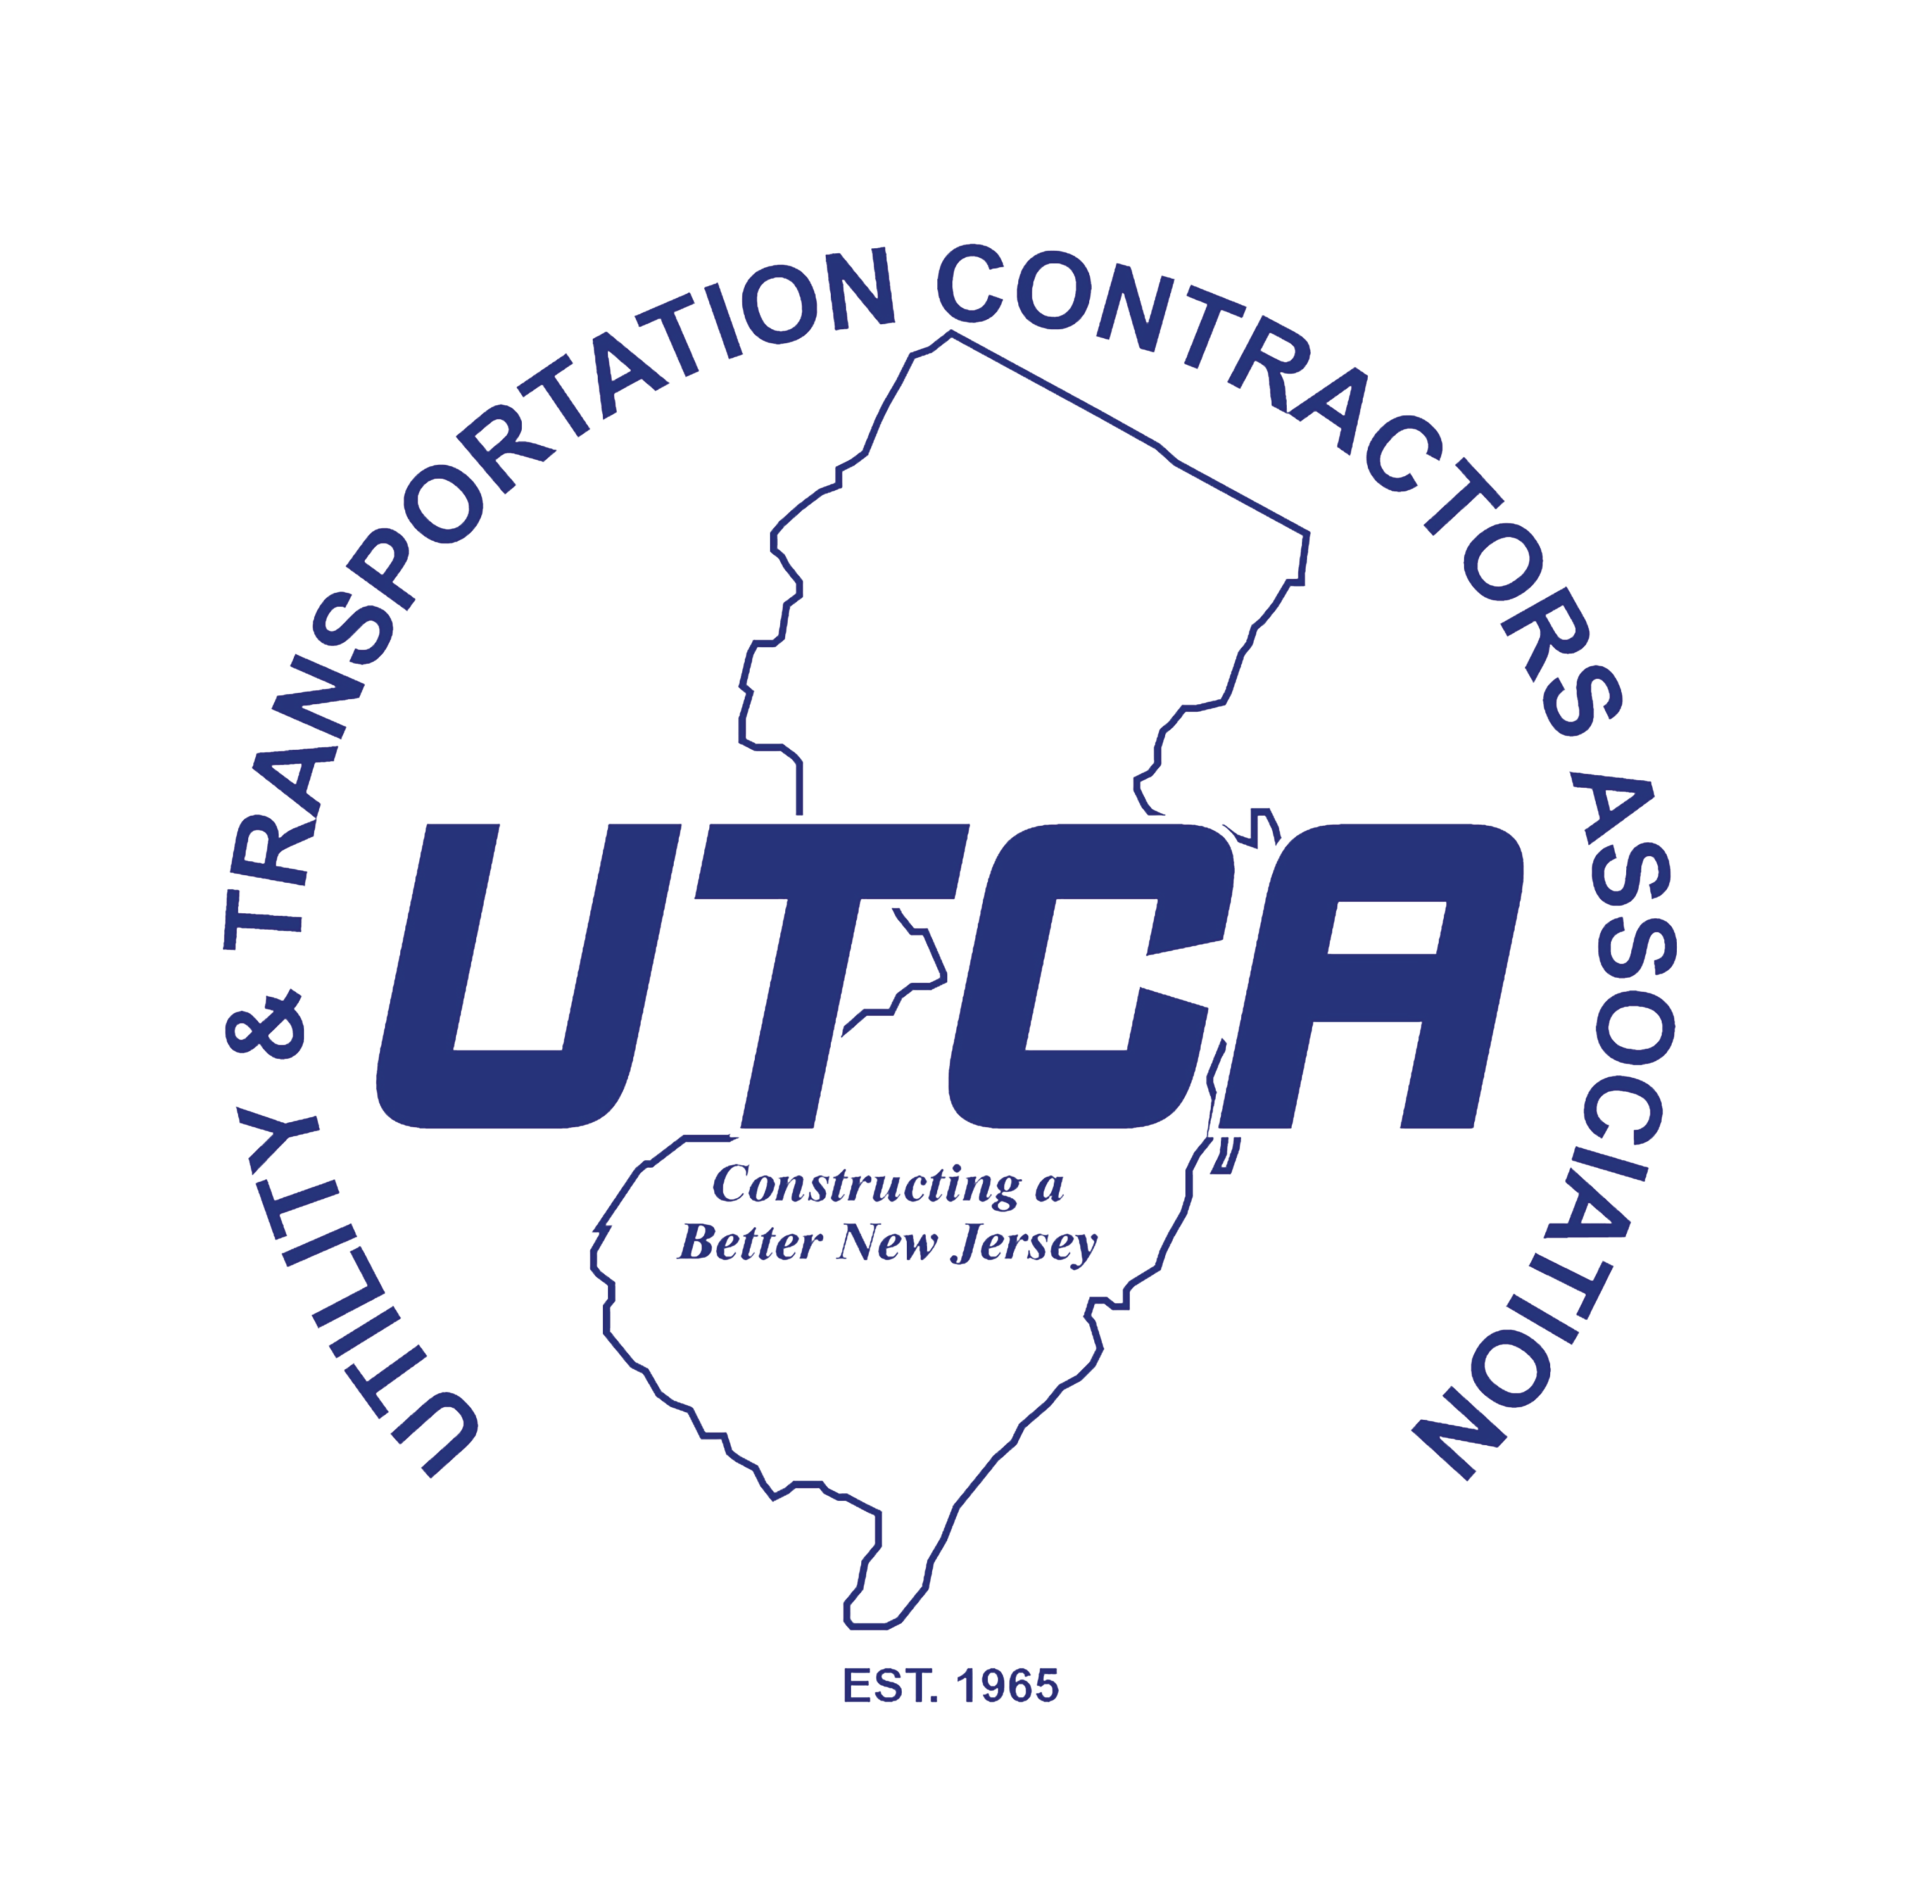 Utility And Transportation Contractors Association (UTCA)